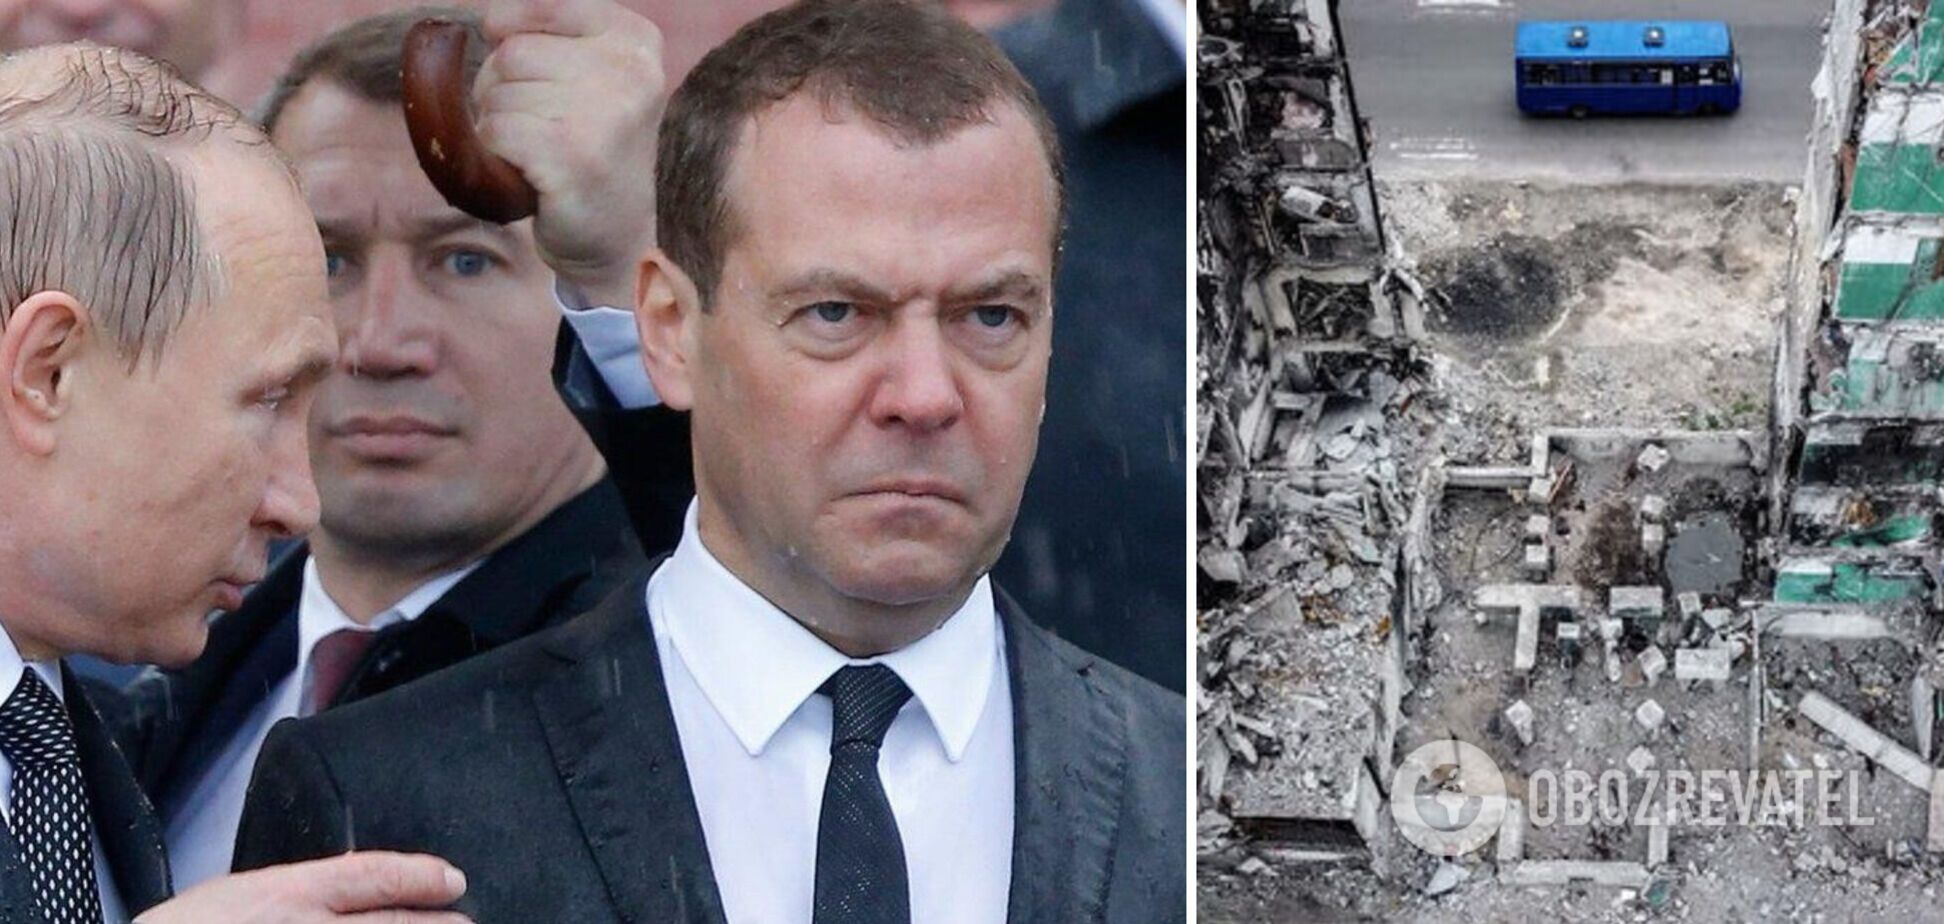 Медведев, сына которого могут выдворить из США, разразился новыми угрозами